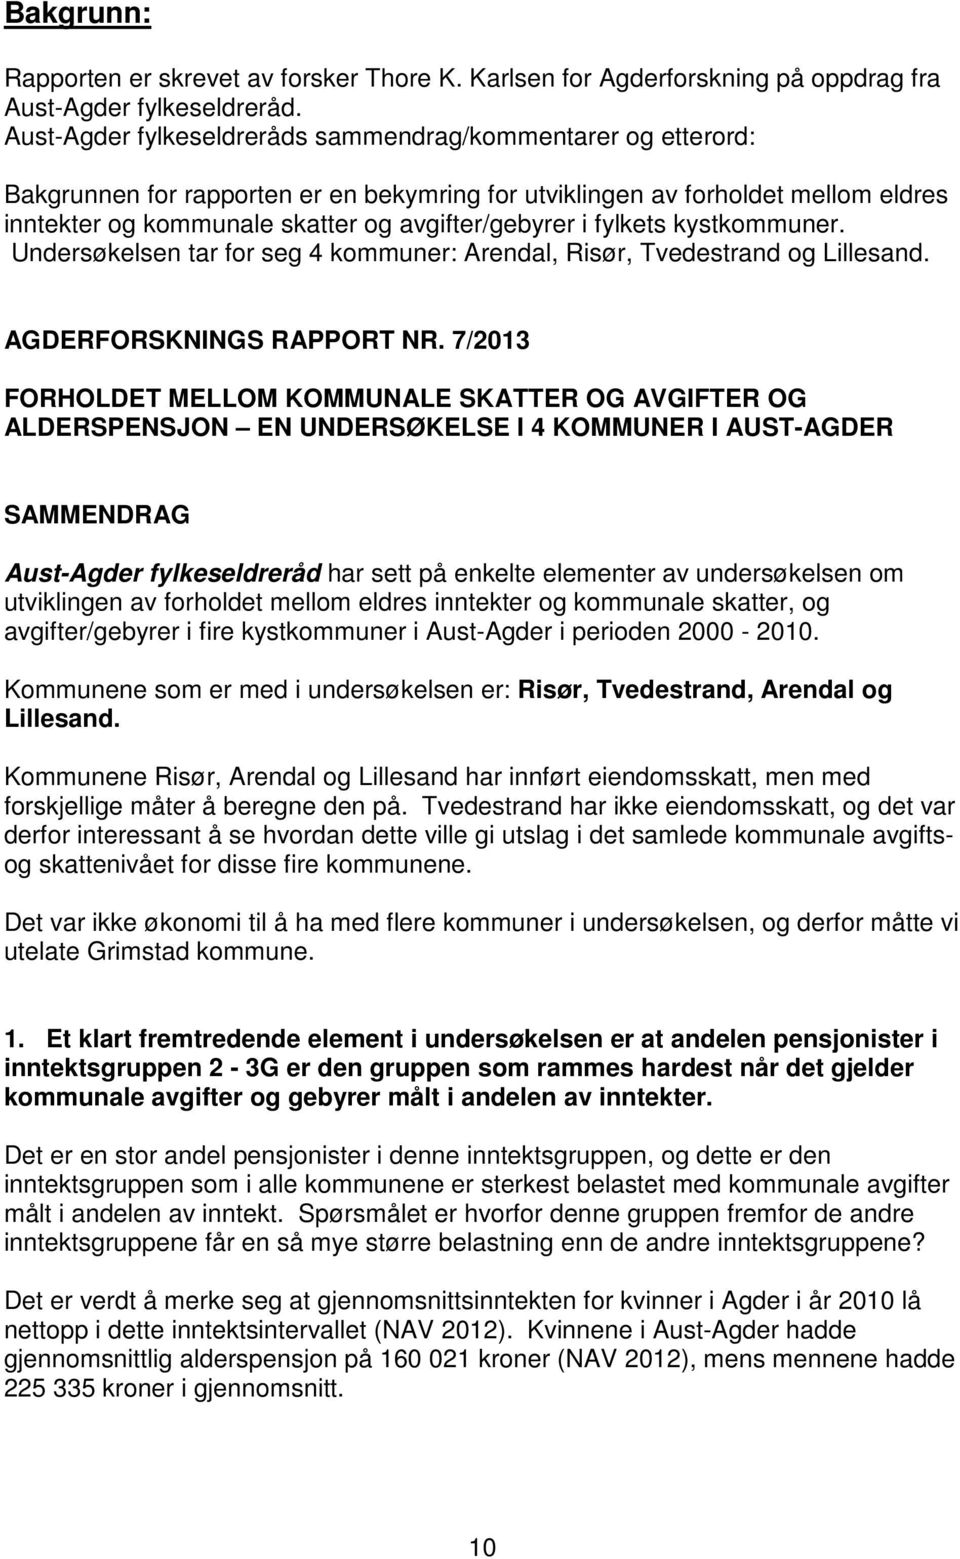 fylkets kystkommuner. Undersøkelsen tar for seg 4 kommuner: Arendal, Risør, Tvedestrand og Lillesand. AGDERFORSKNINGS RAPPORT NR.